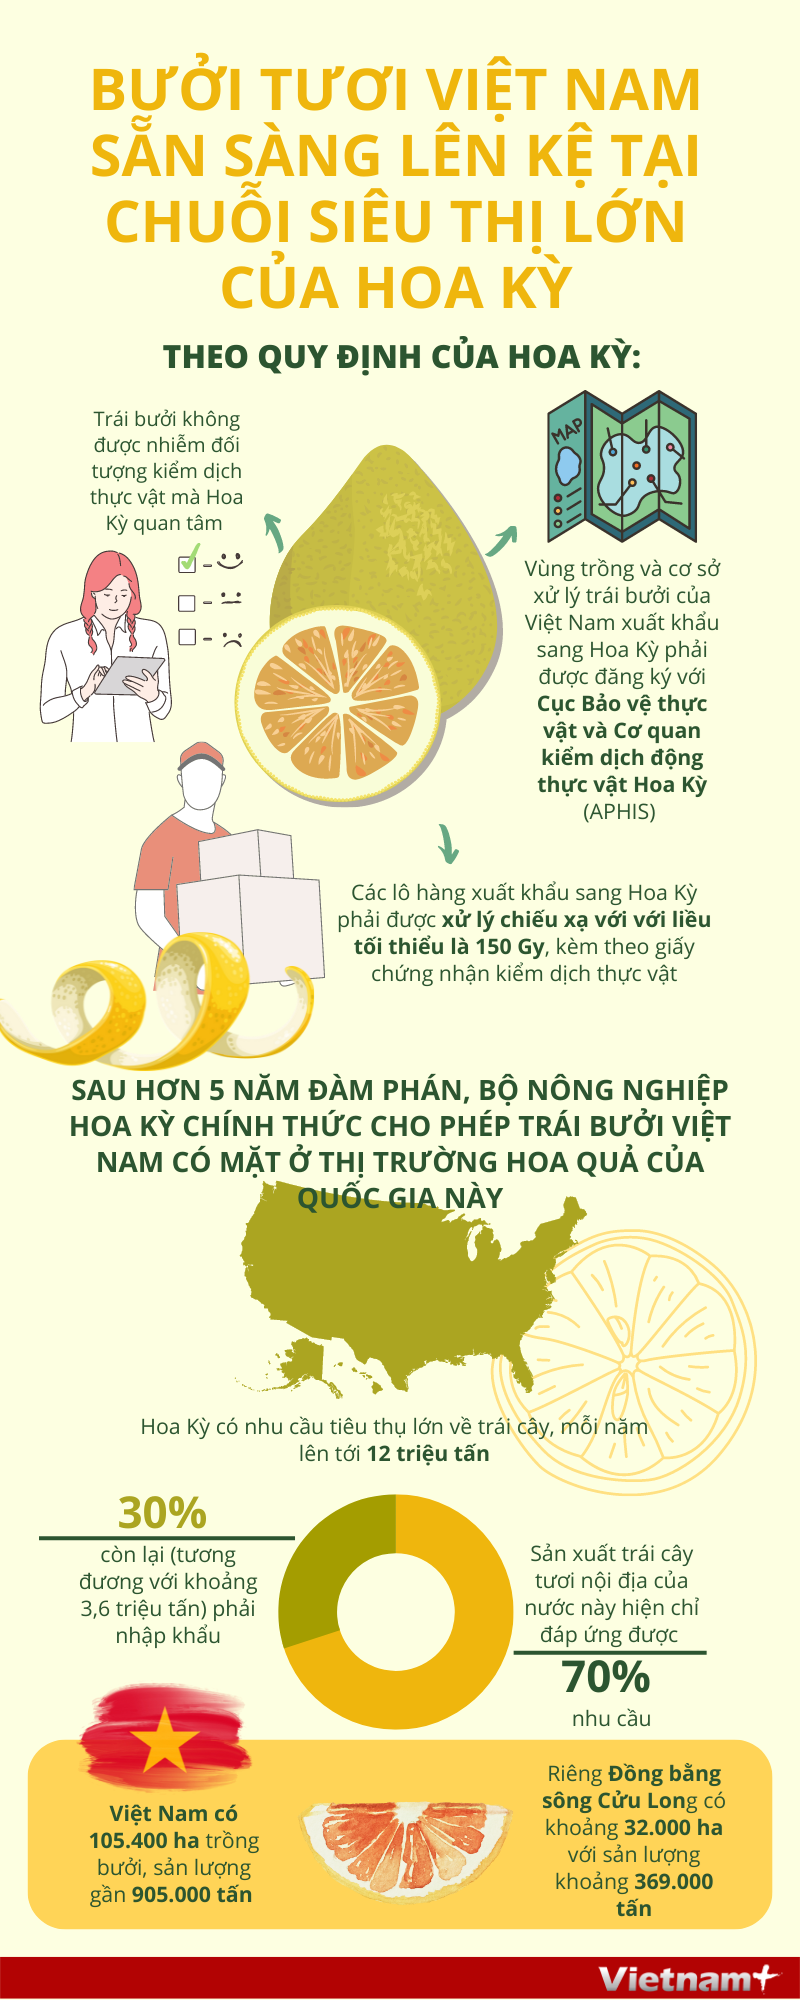 Bưởi tươi Việt Nam sẵn sàng lên kệ tại chuỗi siêu thị lớn của Hoa Kỳ - Ảnh 1.